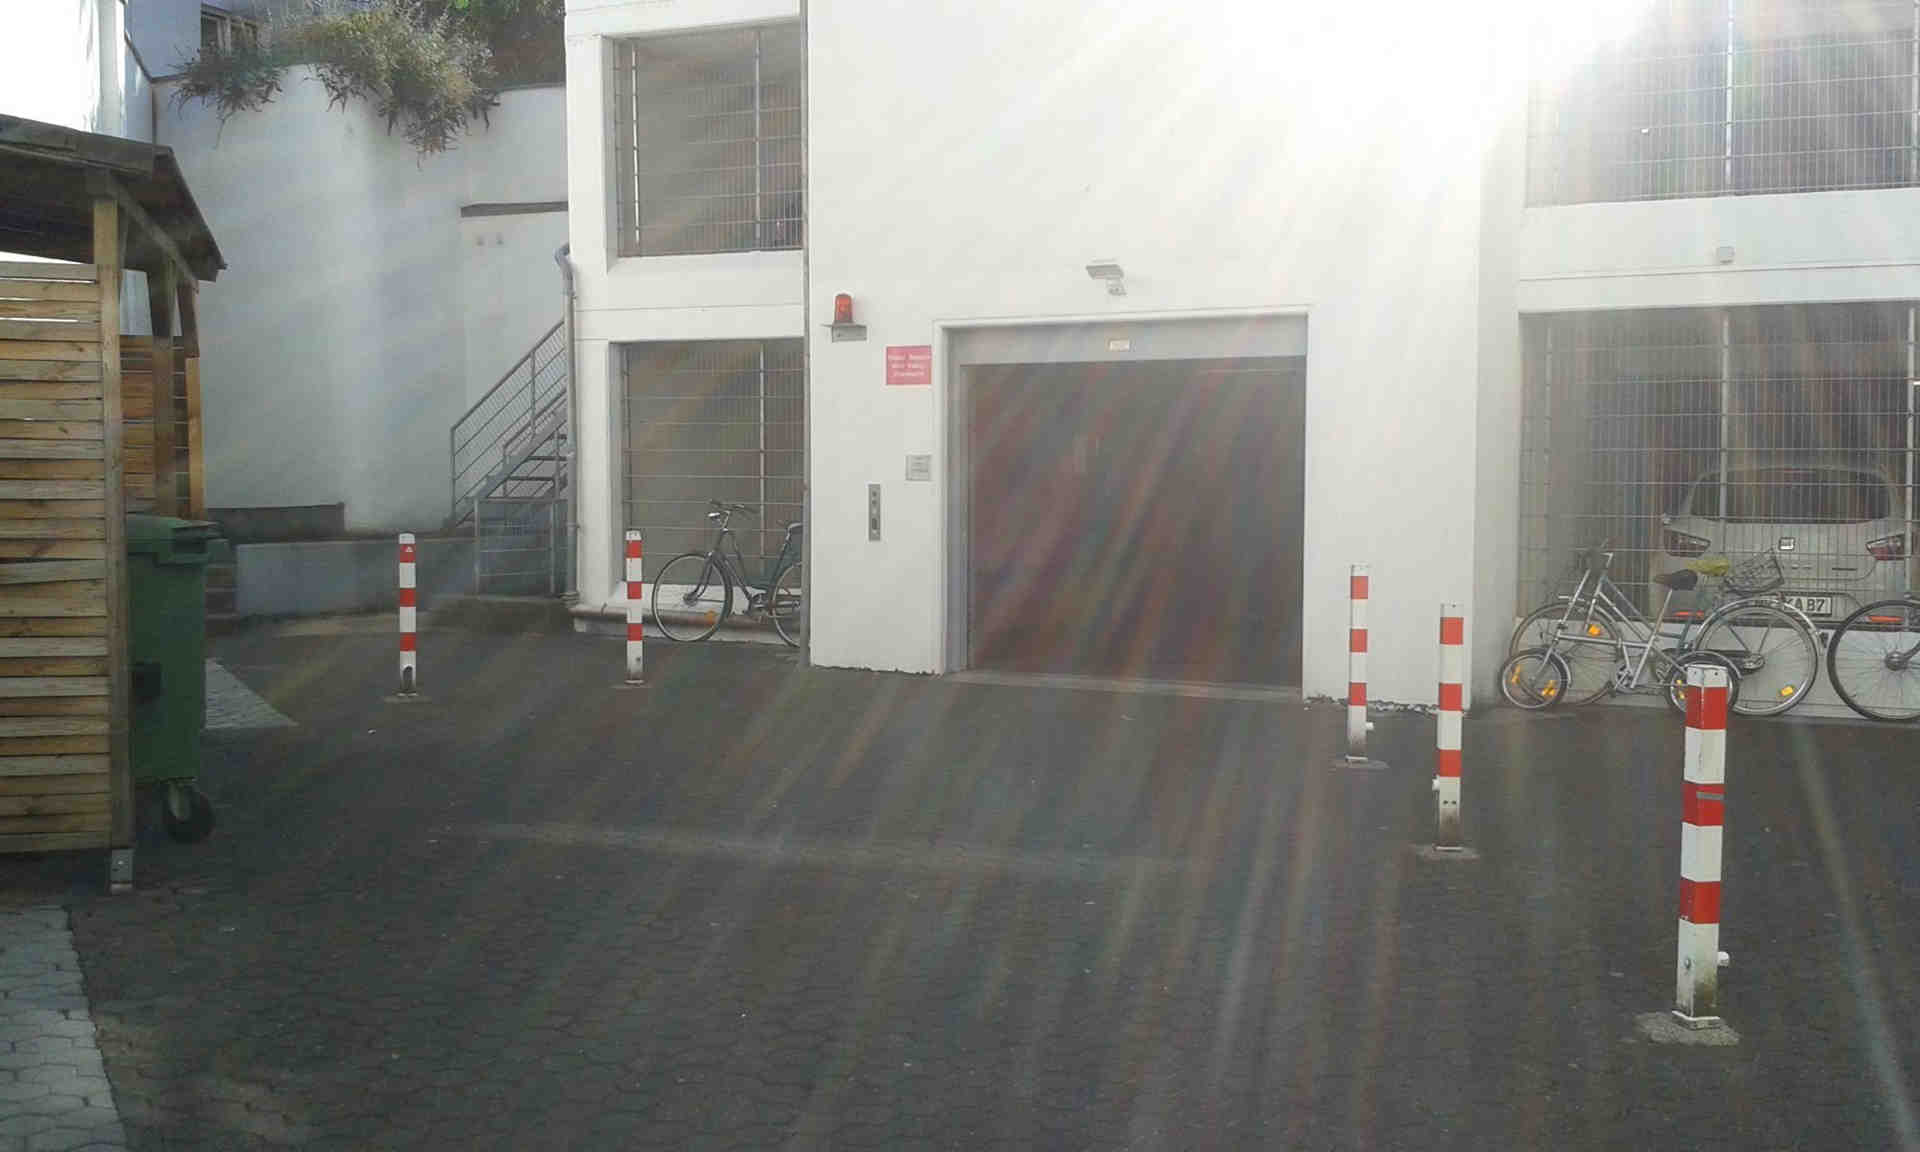 Parkovacie miesto/garáž v suteréne v centre Kolína (Zülpi/Barba) - Mauritiuswall, 50676 Kolín nad Rýnom - Fotka 1 z 3